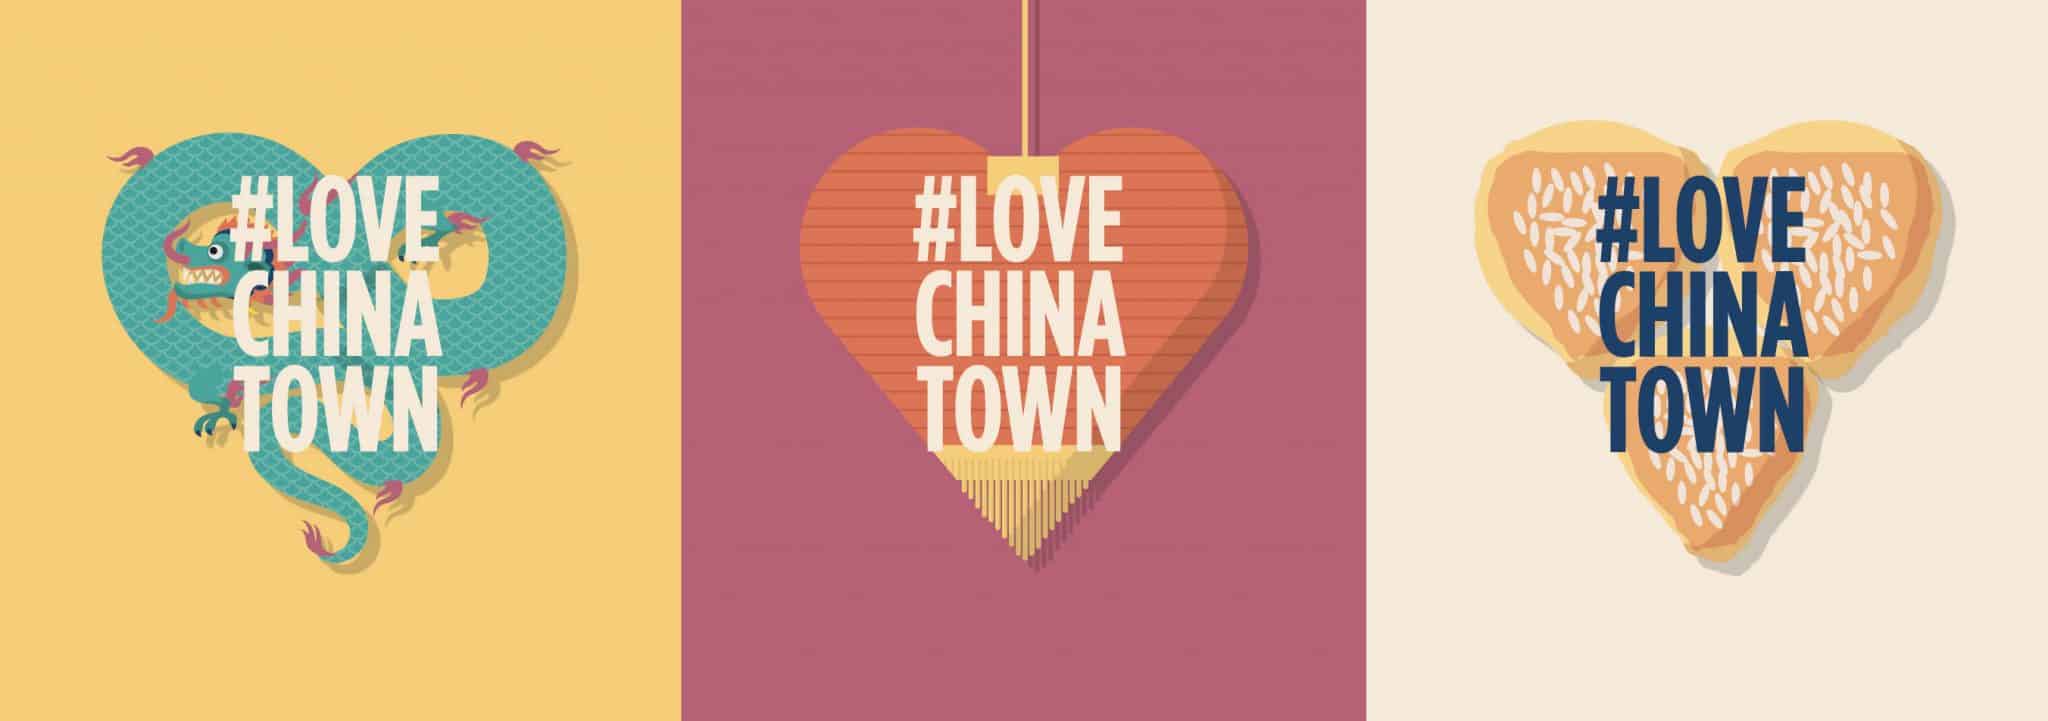 #LoveChinatown